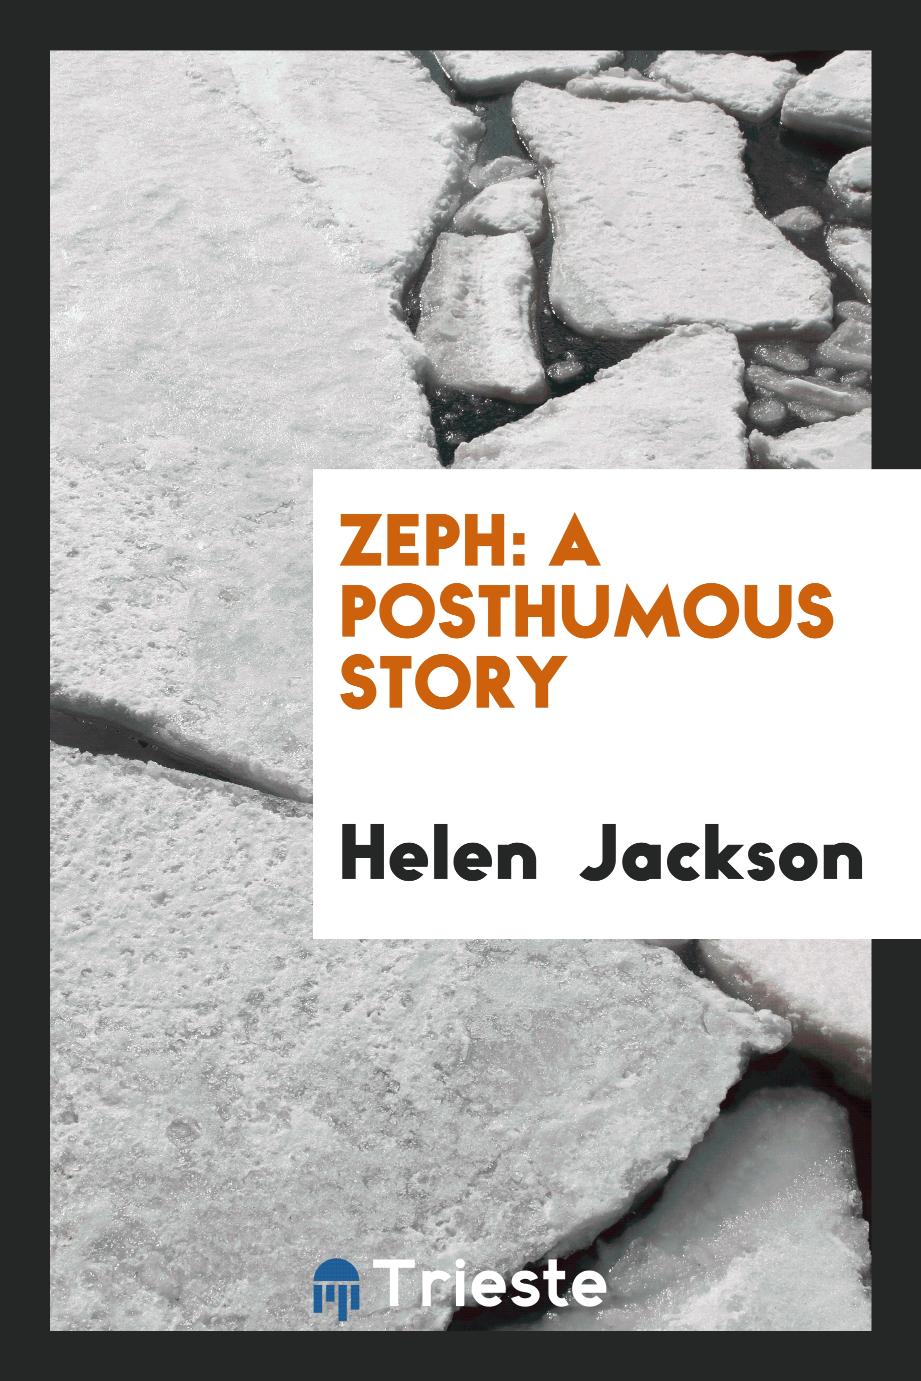 Zeph: a posthumous story